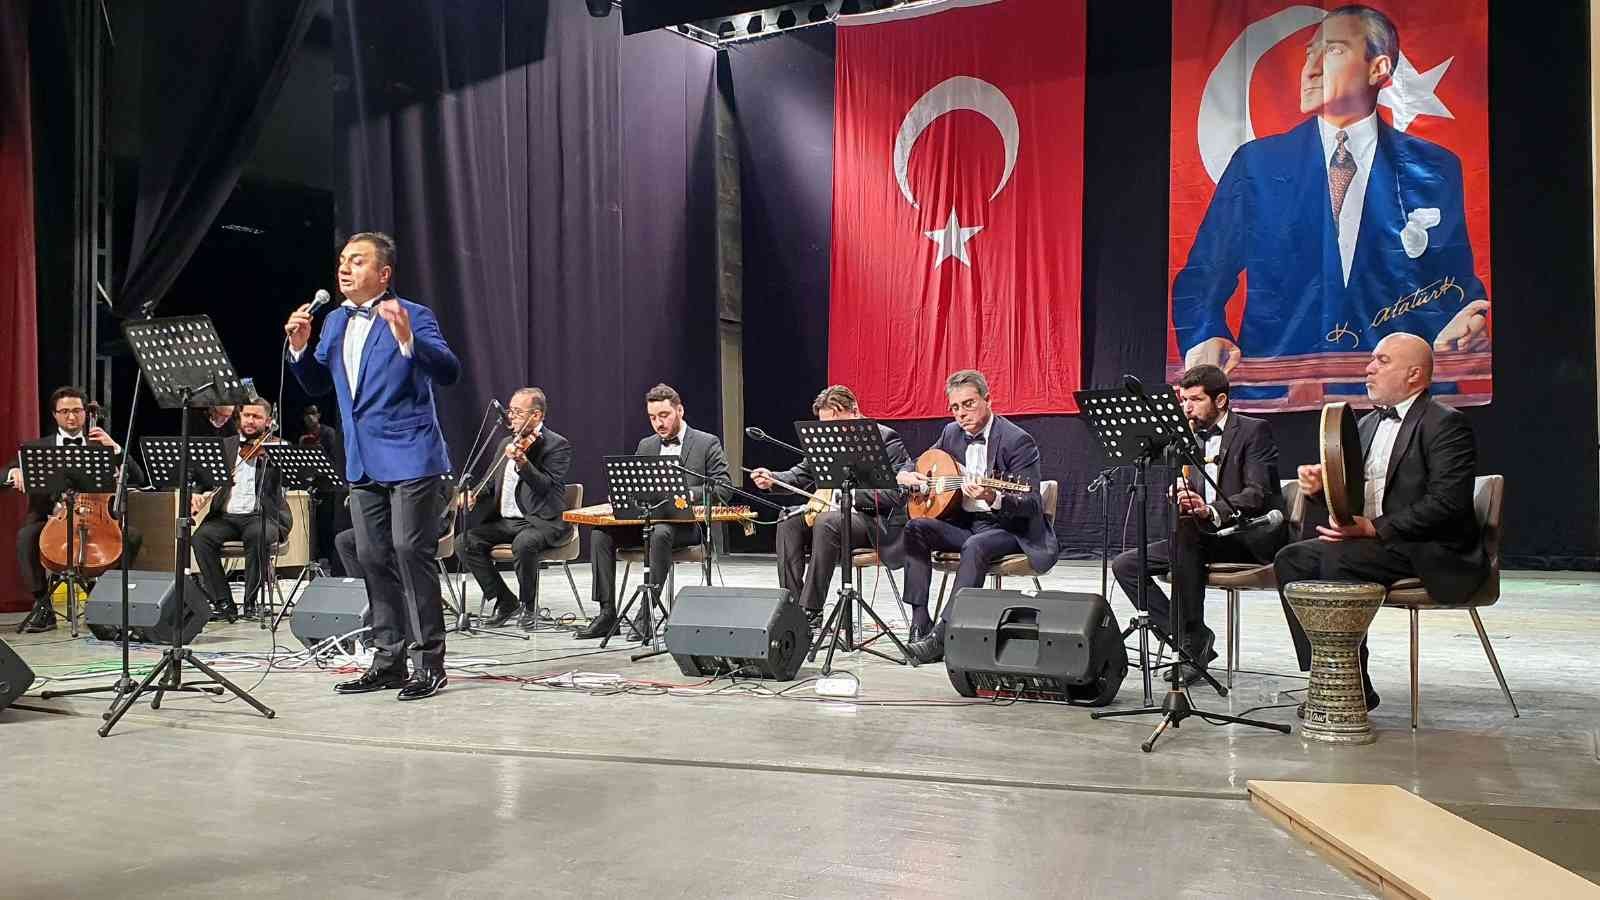 Nazilli’de 29 Ekim Cumhuriyet Bayramı Konseri düzenlendi #aydin